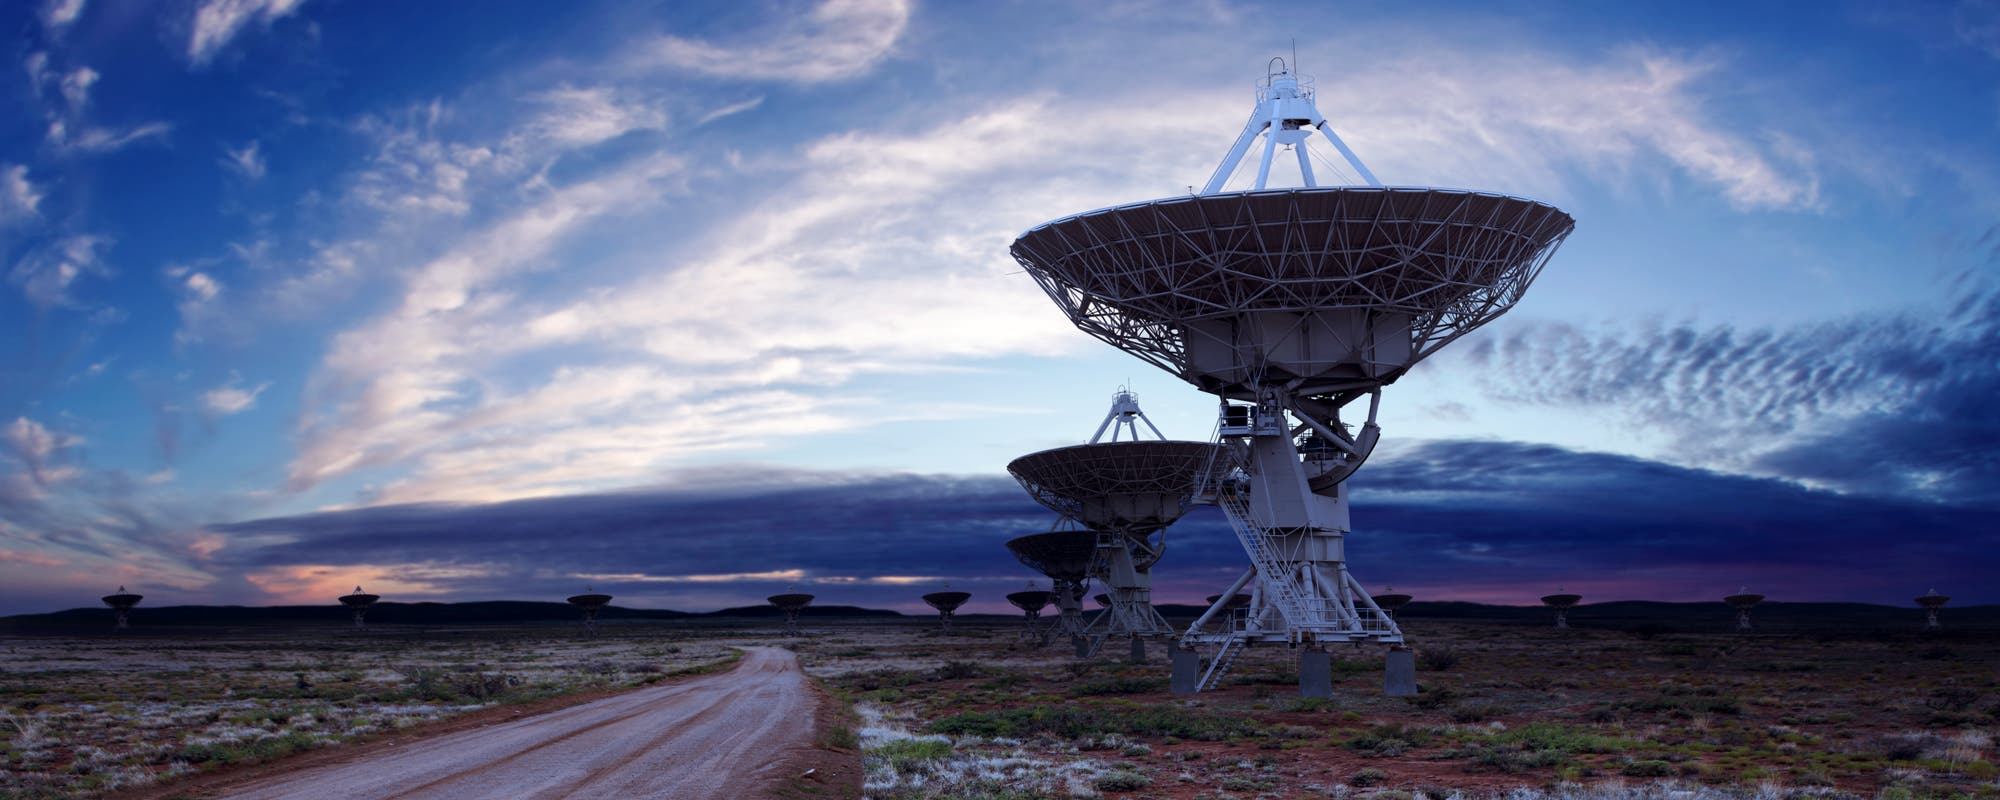 Das Very Large Array ist eine aus 27 Radioteleskopen bestehende Anlage im US-Bundesstaat New Mexico